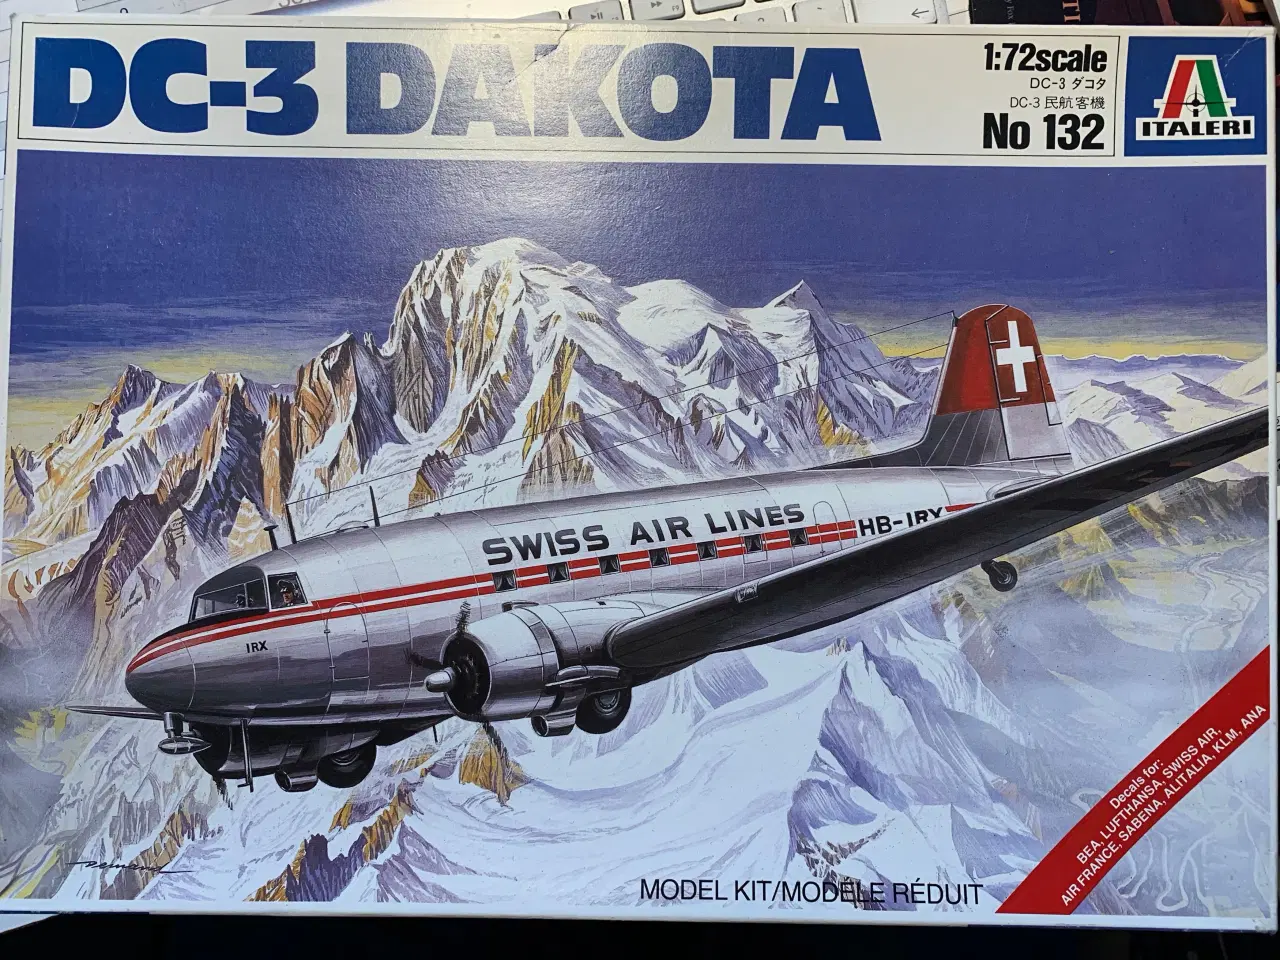 Billede 1 - Modelfly DC-3 DAKOTA